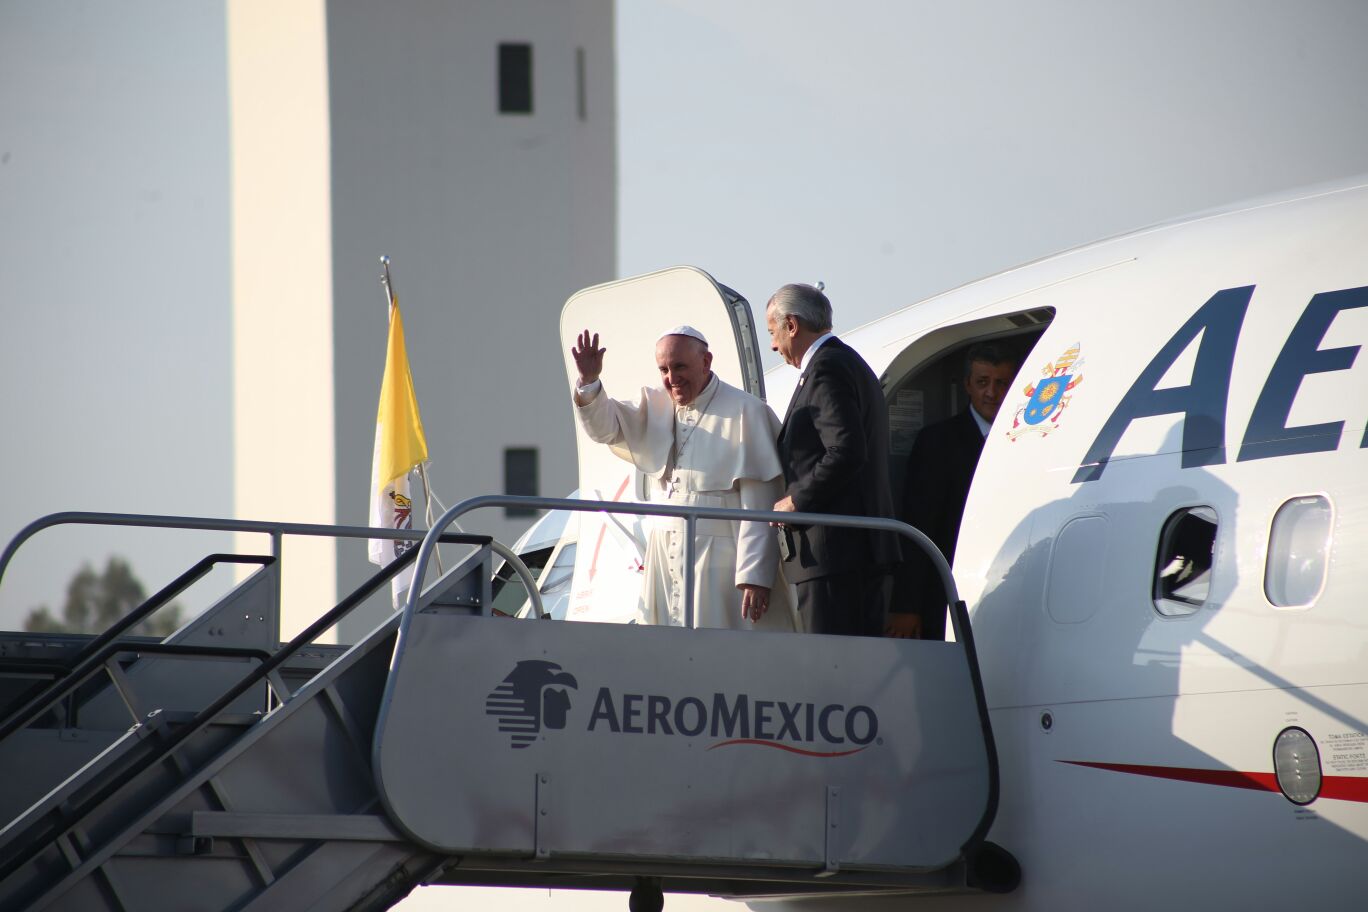 El Papa, Ayotzinapa, el Estado Laico, y los que no terminan de entender